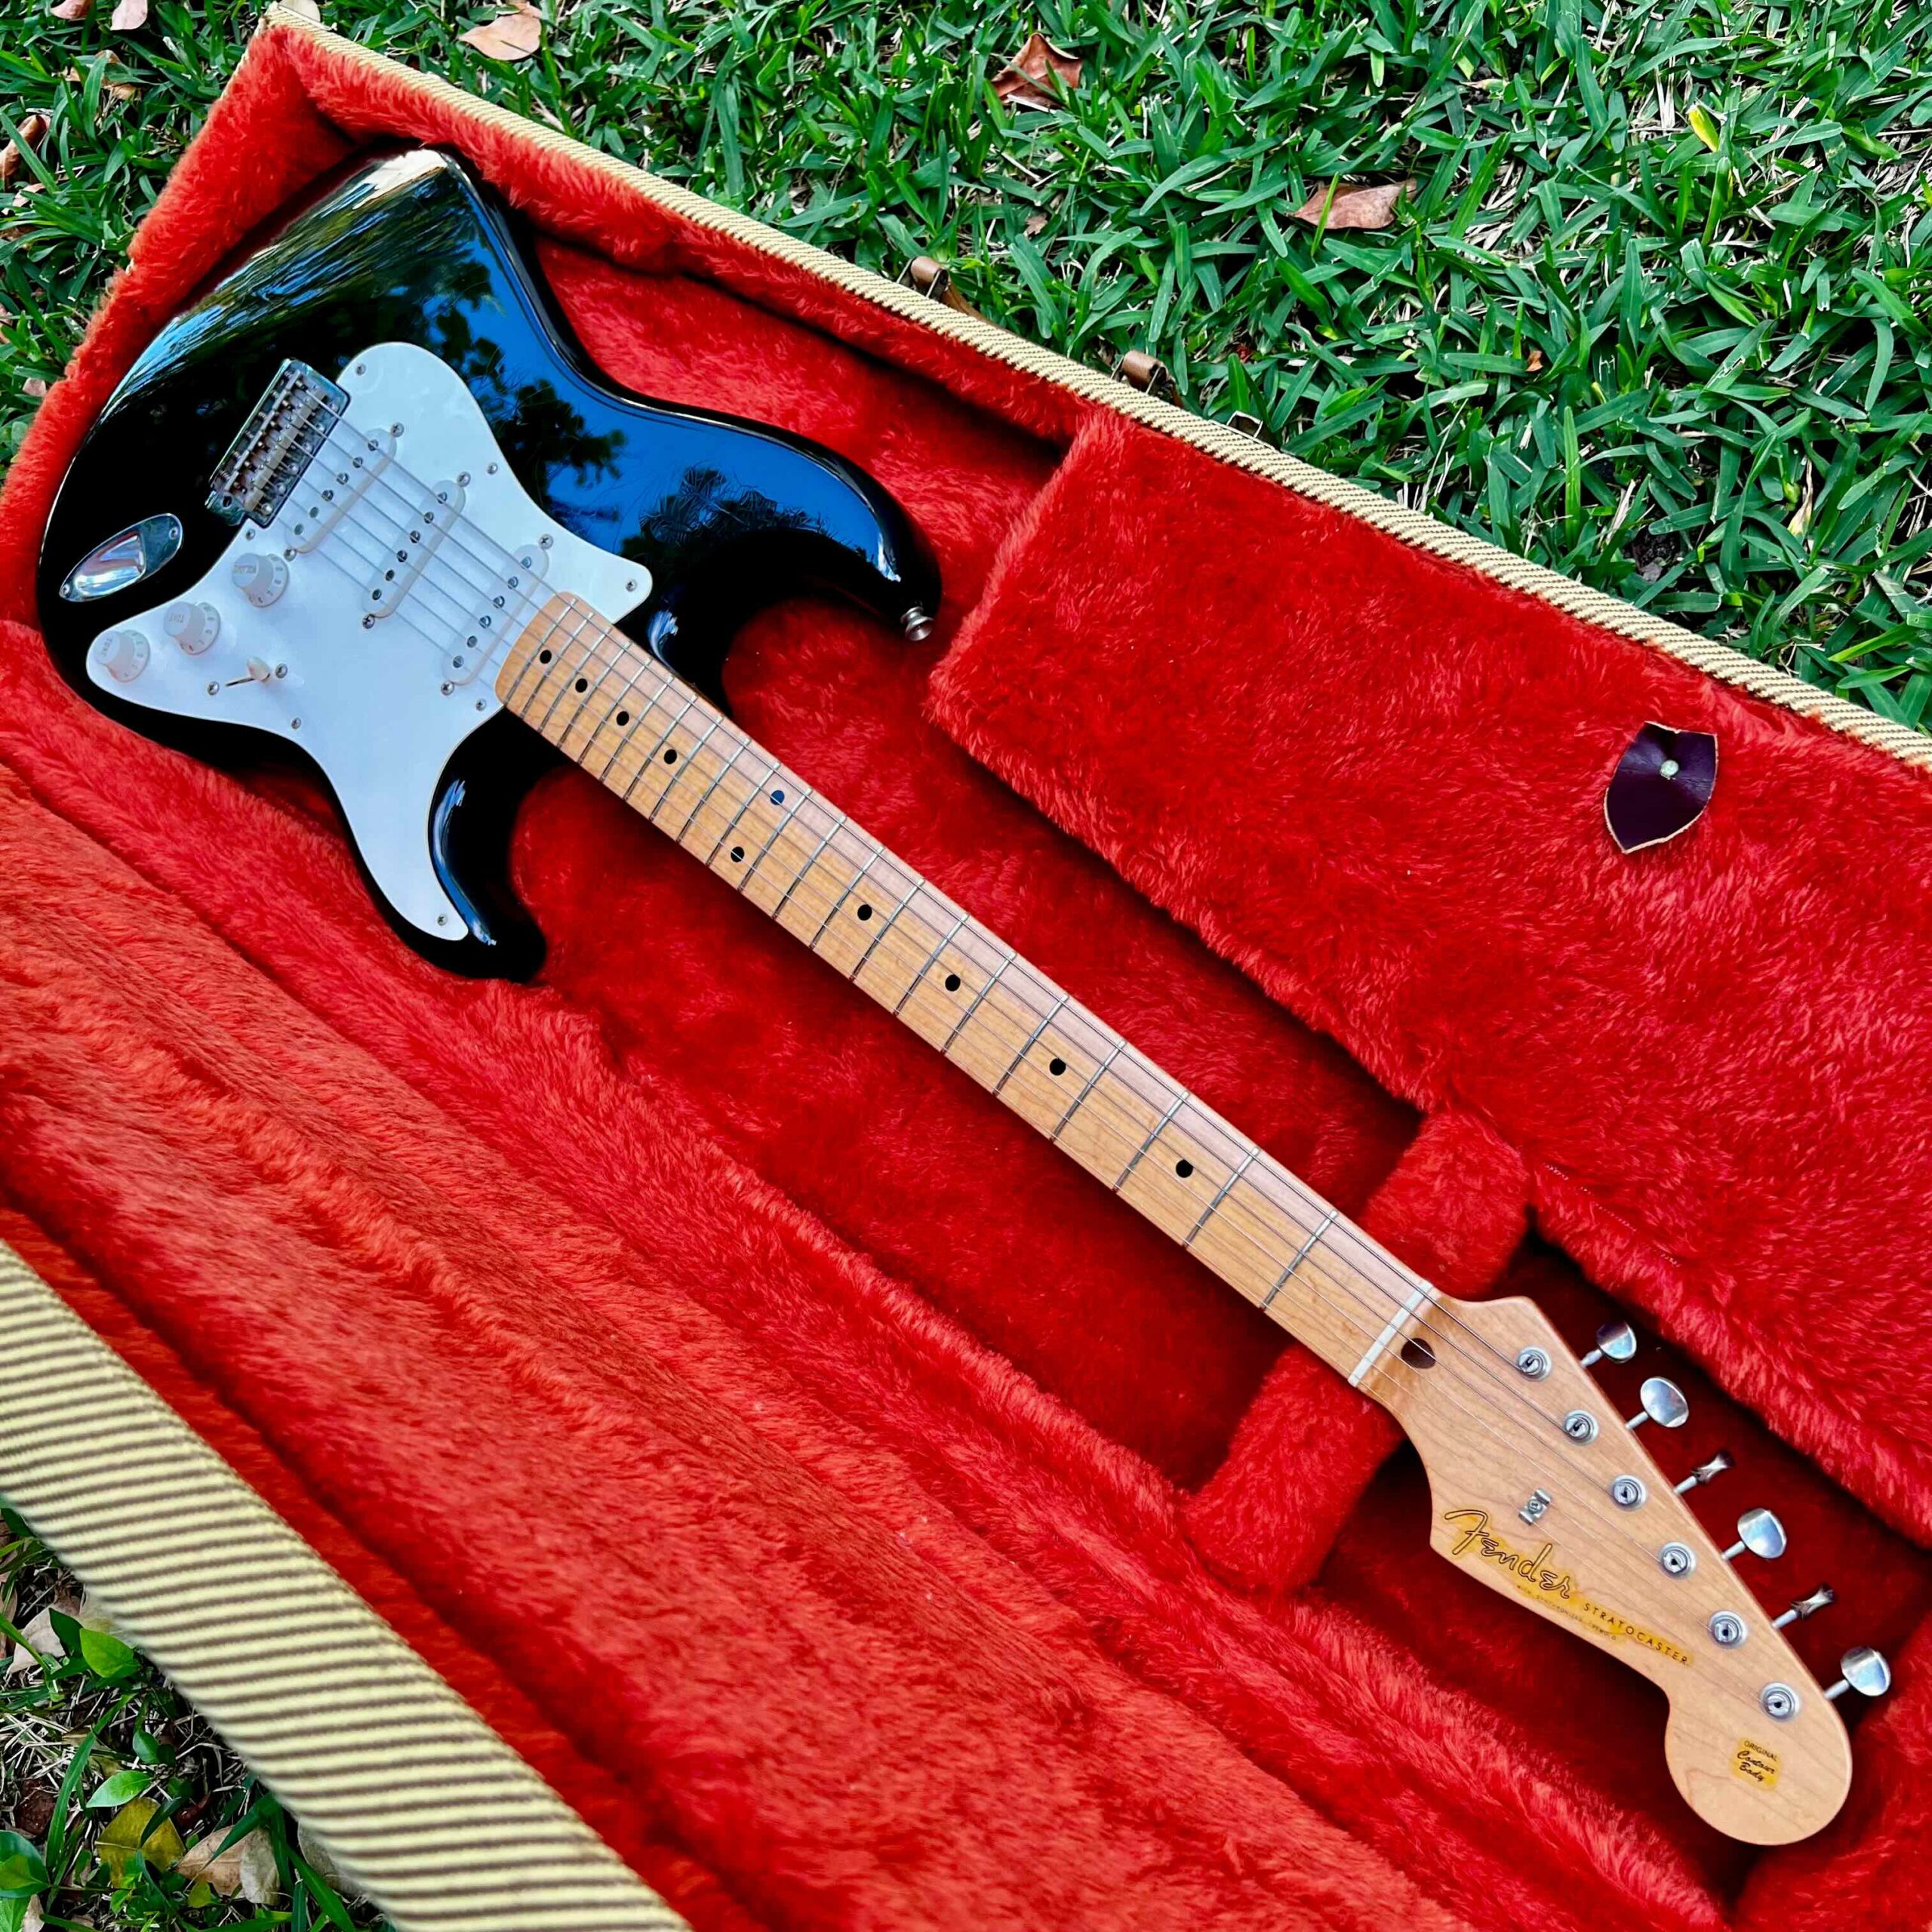 Fender Custom Shop 1956 Stratocaster Closet Classic with Original Hard Case